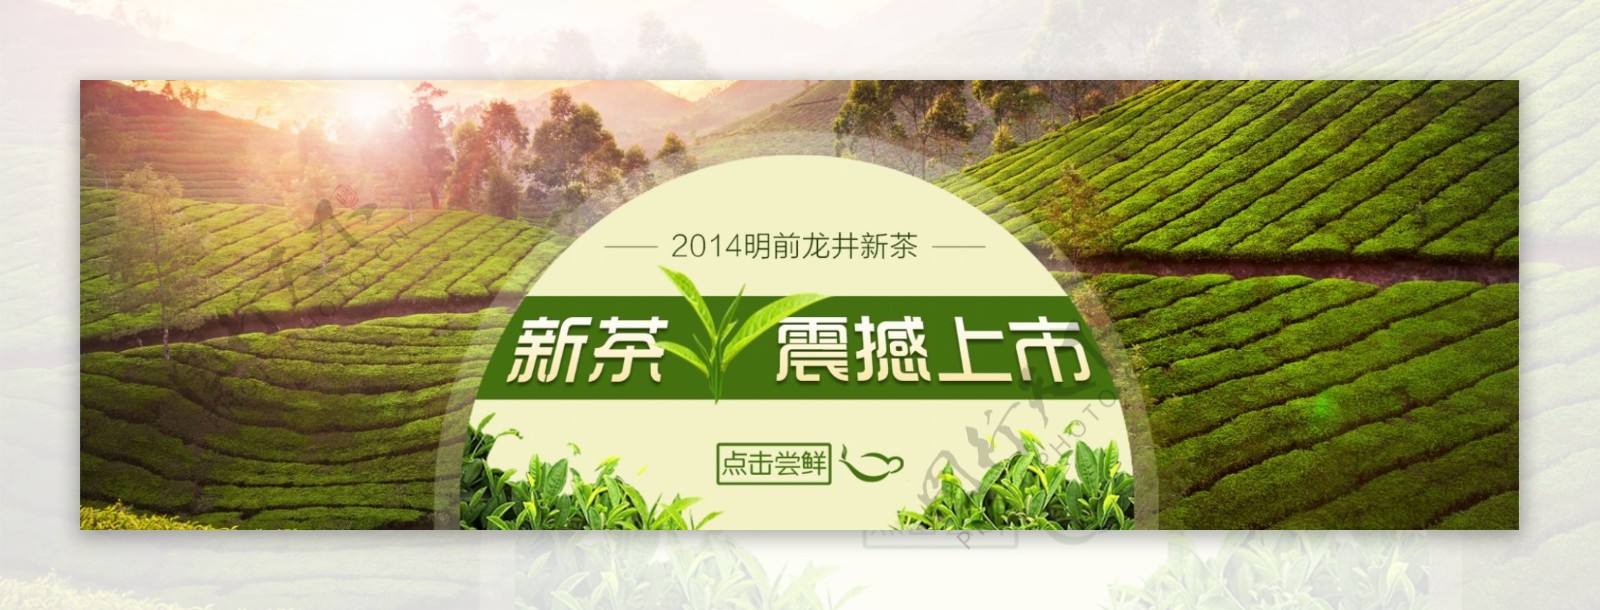 淘宝新茶上市促销海报设计PSD素材